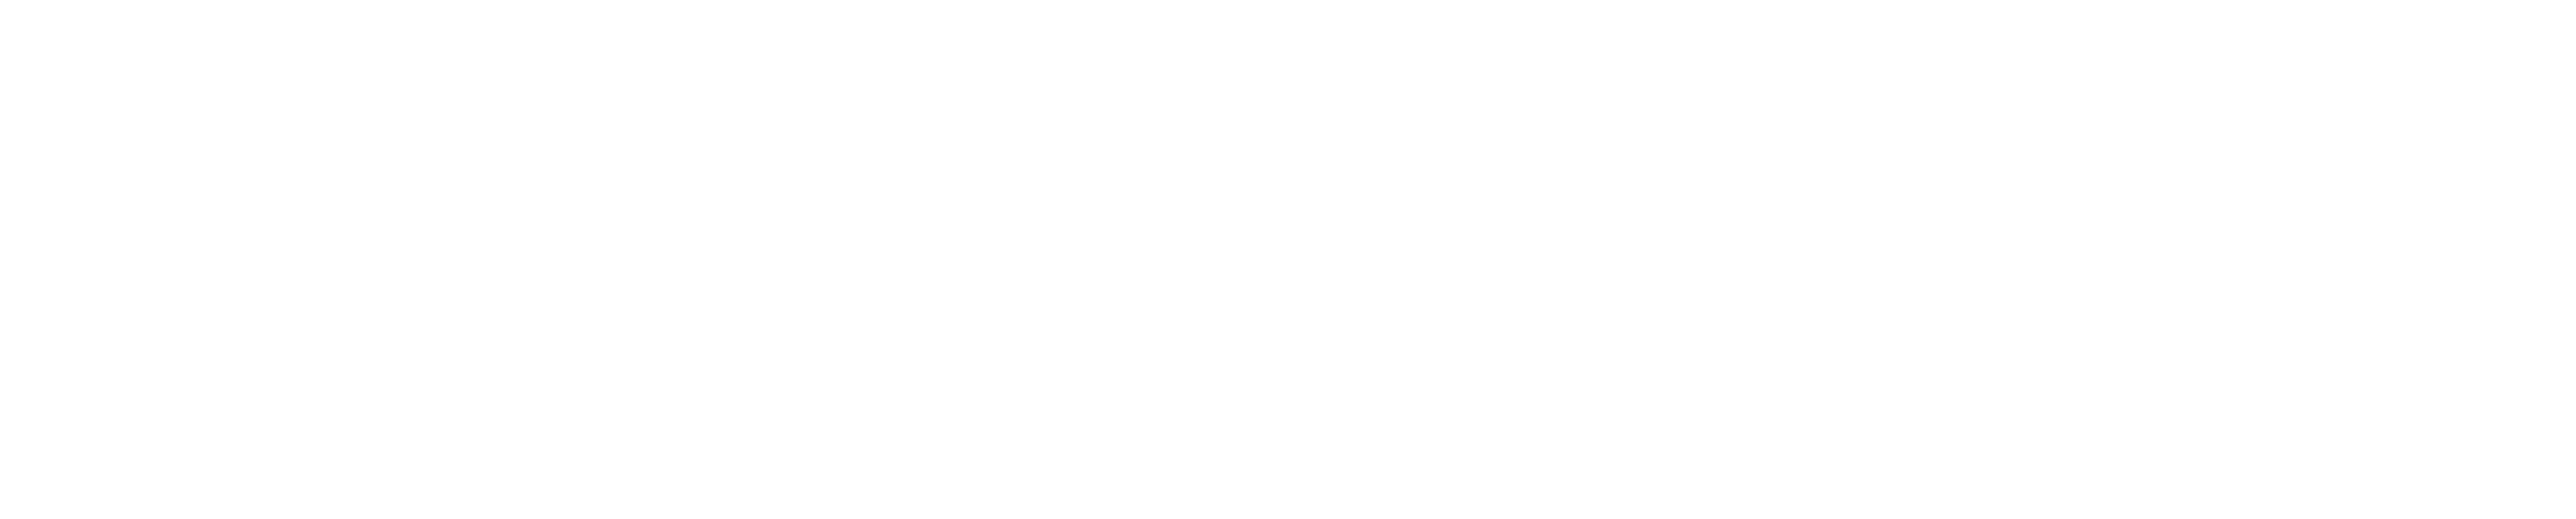 Rock'N'Roll Rho